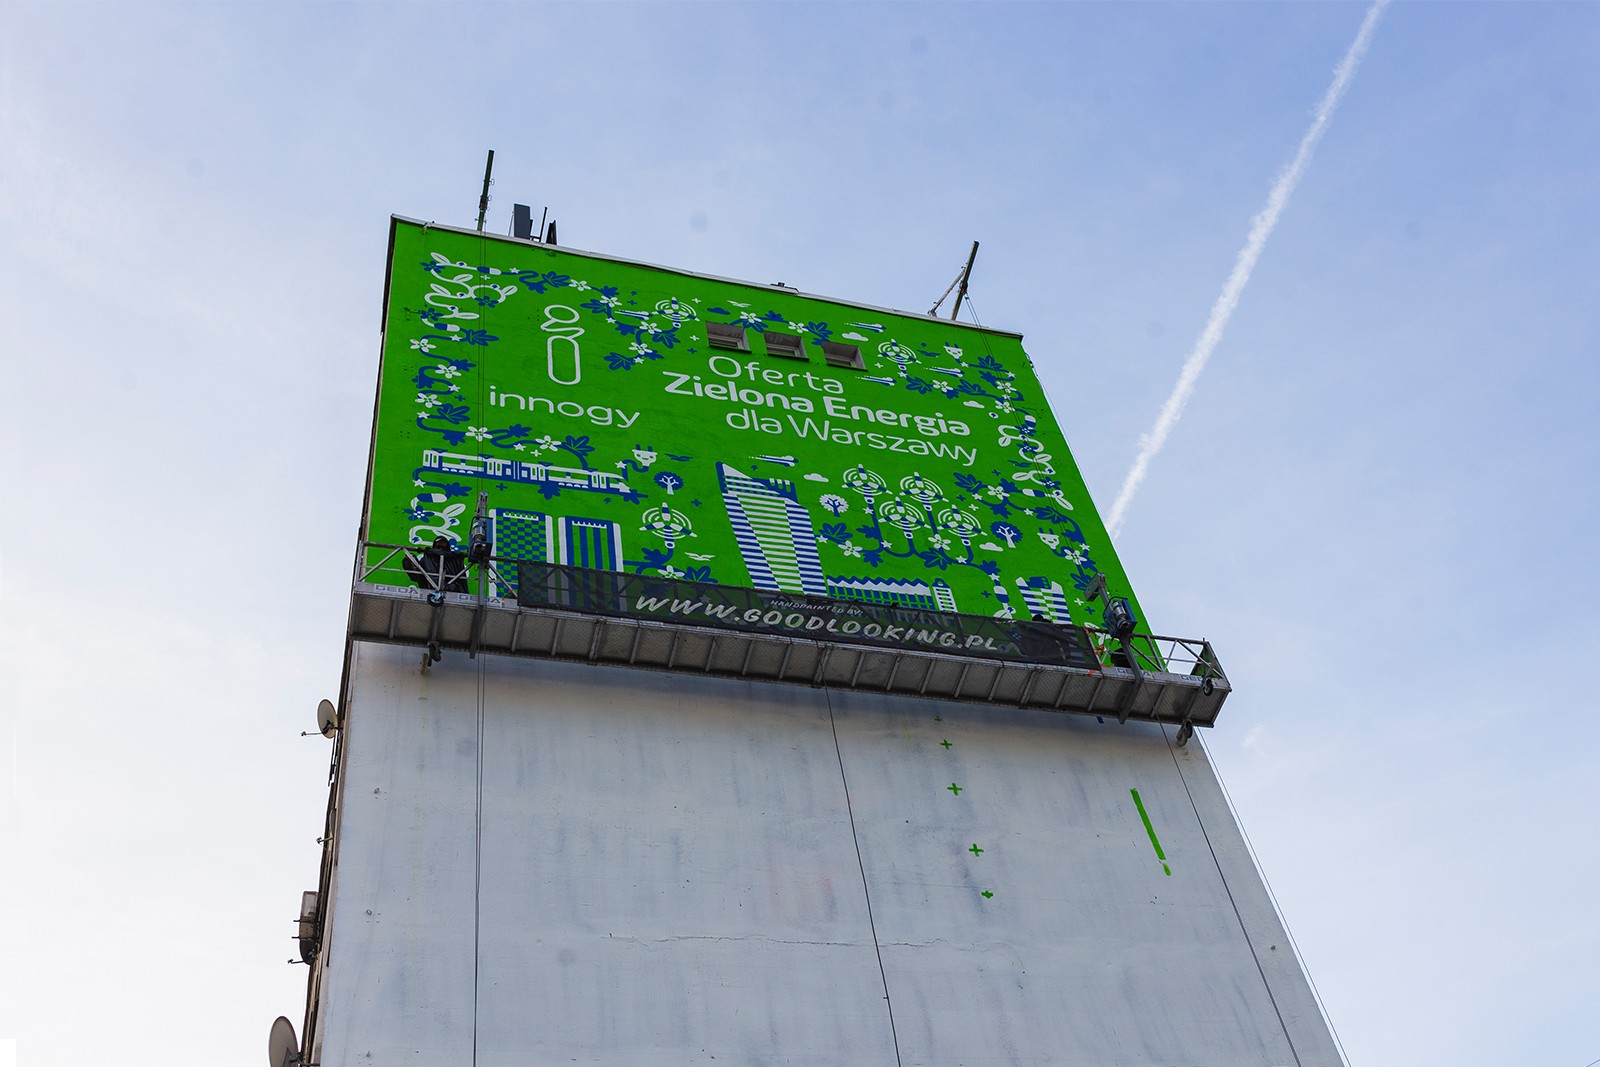 Mural promujący Docenisz prąd prosto z natury przy ul. Chmielnej w Warszawie | Zielona Energia dla Warszawy | Portfolio